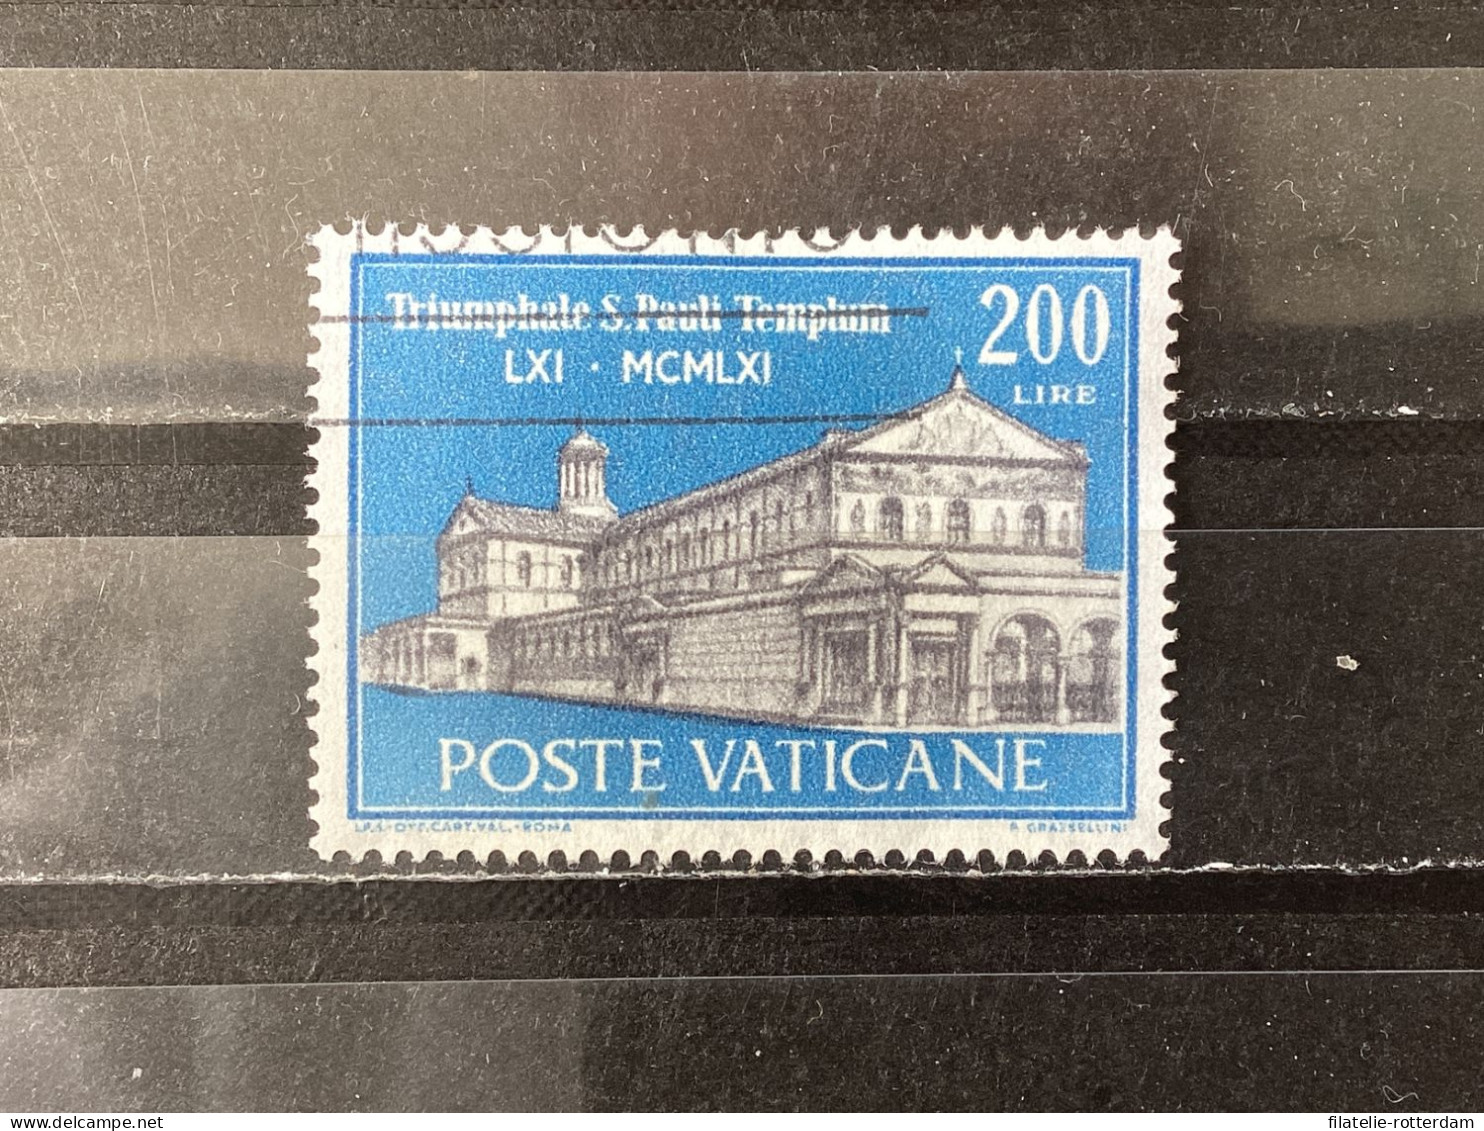 Vatican City / Vaticaanstad - Sct. Paul In Rome (200) 1961 - Used Stamps